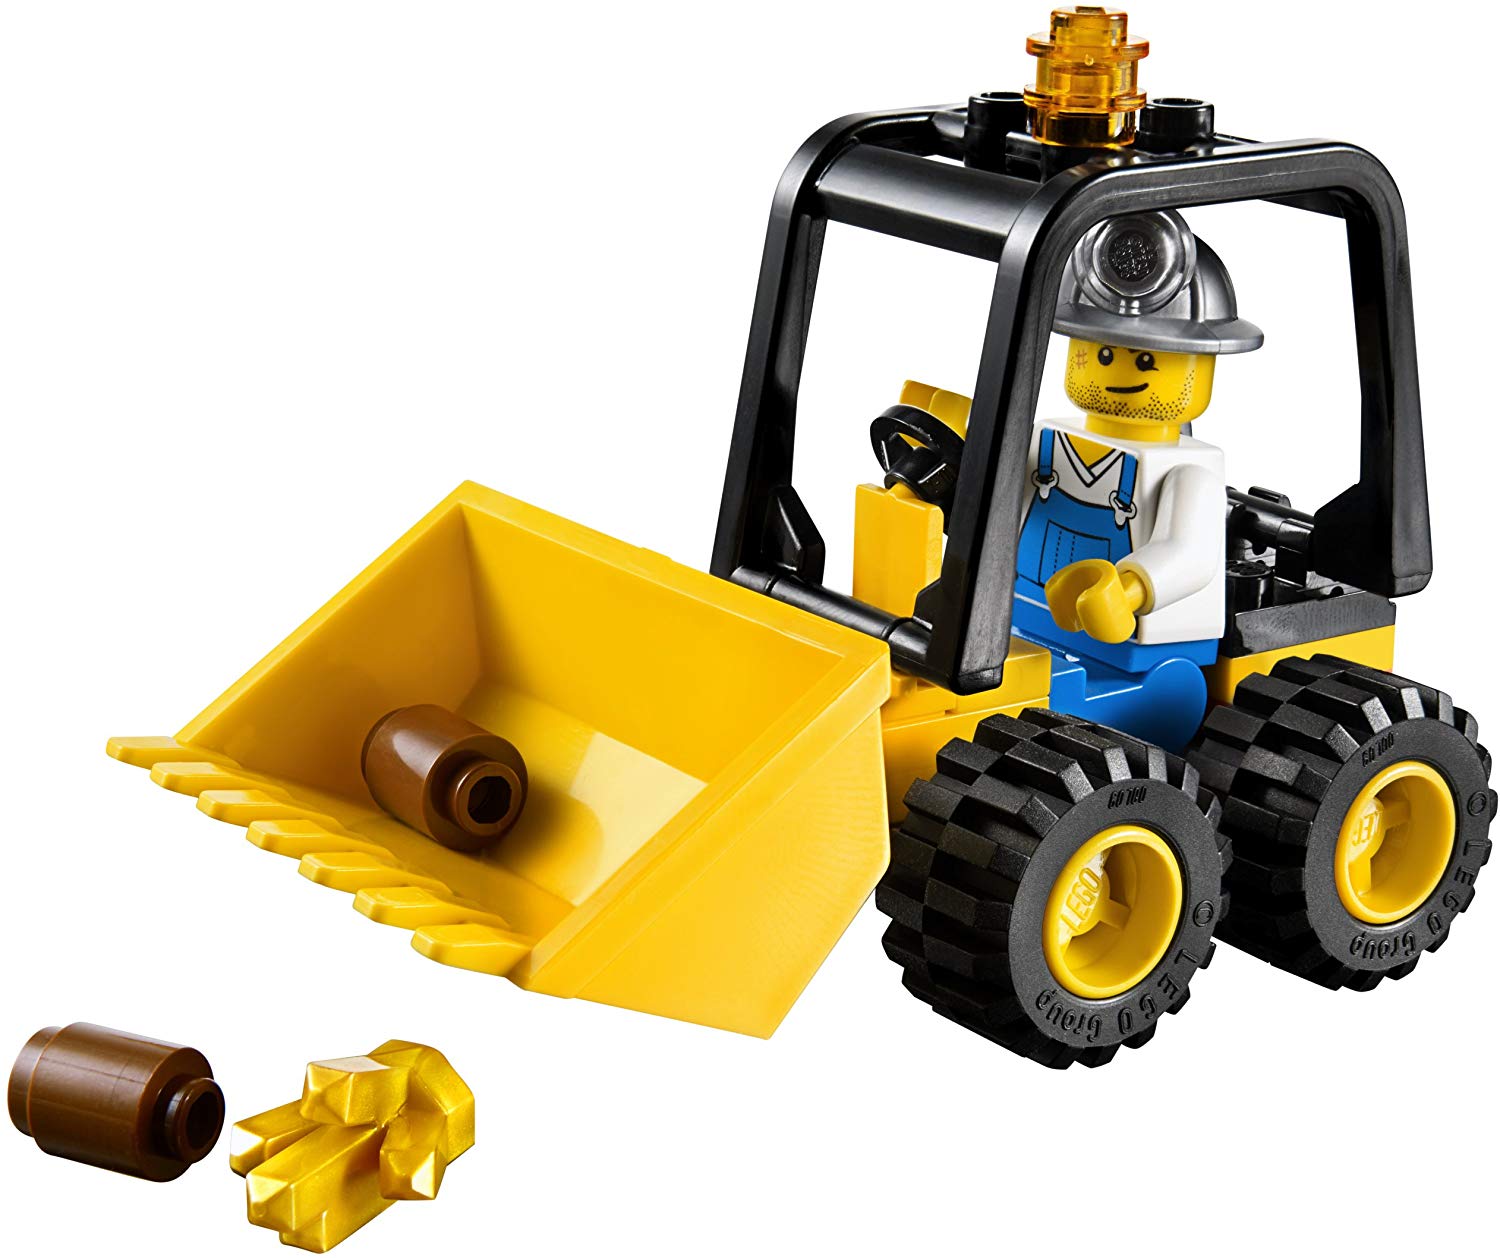 Lego 30151 Mining Dozer